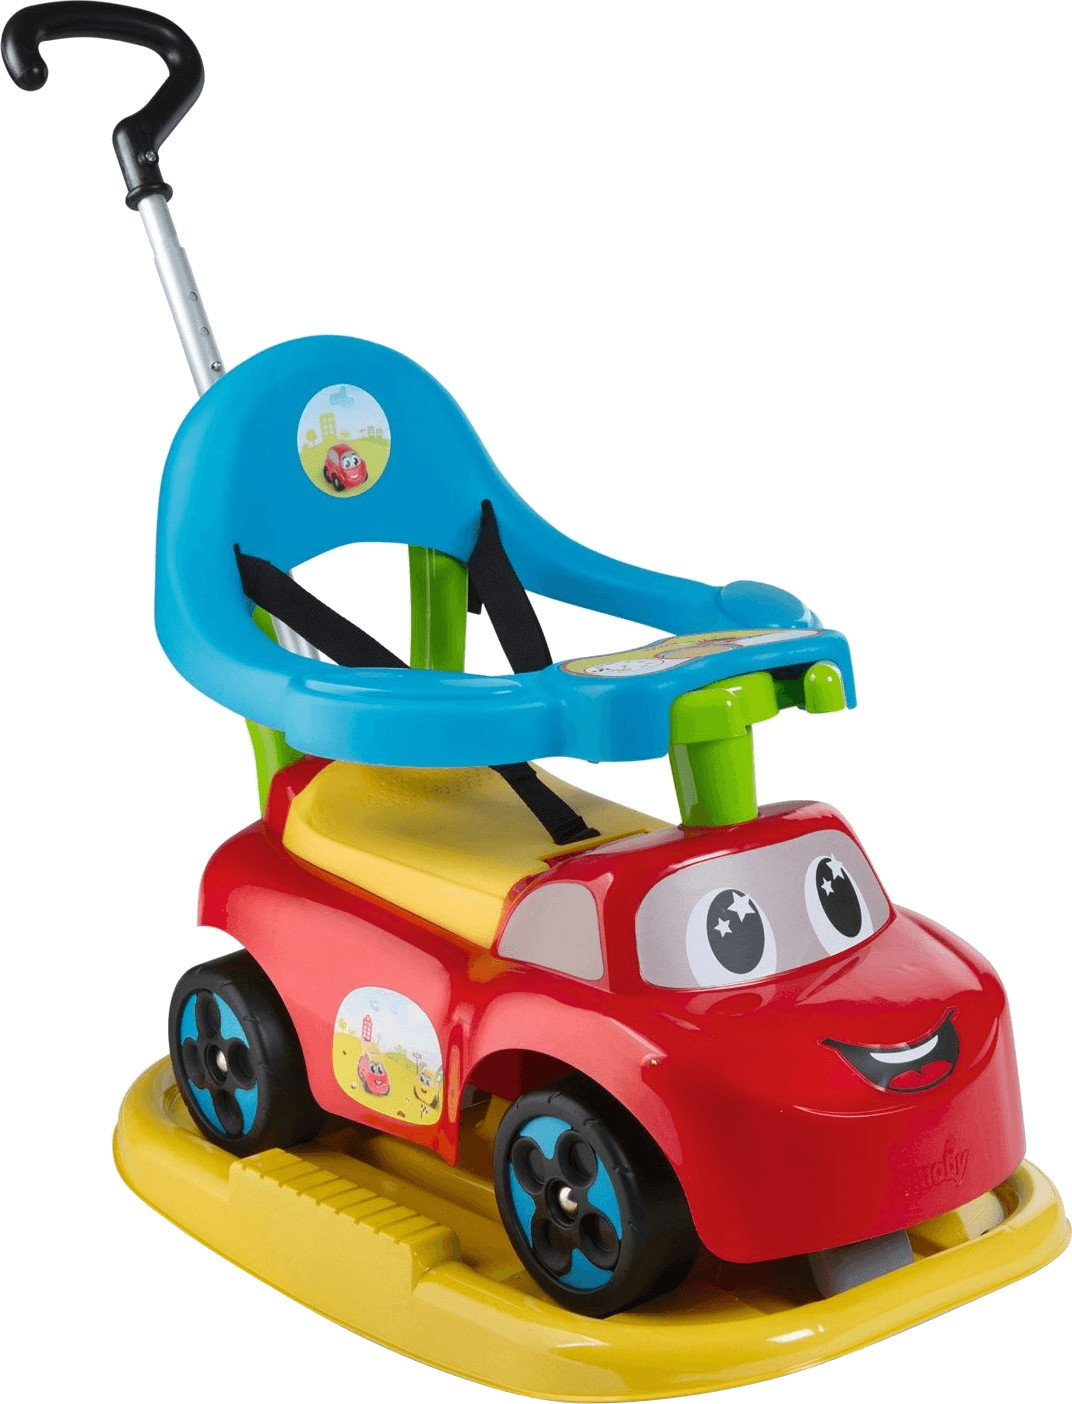 Little smoby porteur auto, jouets 1er age